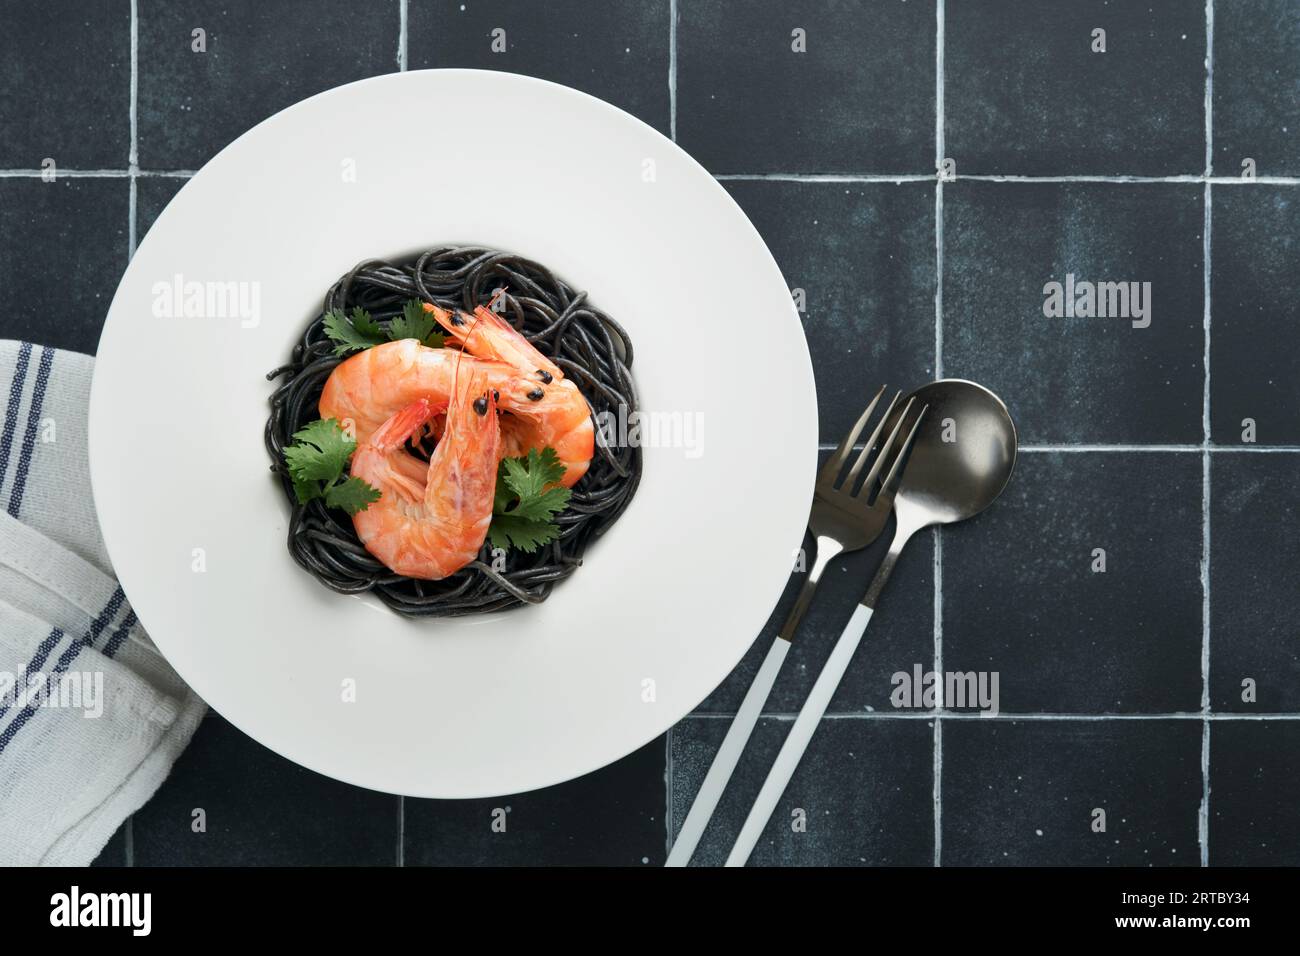 Spaghetti neri di gamberi su piatto nero su fondo scuro di cemento. Pasta con inchiostro calamaro e gamberi. Pasta a base di pesce. Vista dall'alto sulla linguetta in pietra nera Foto Stock